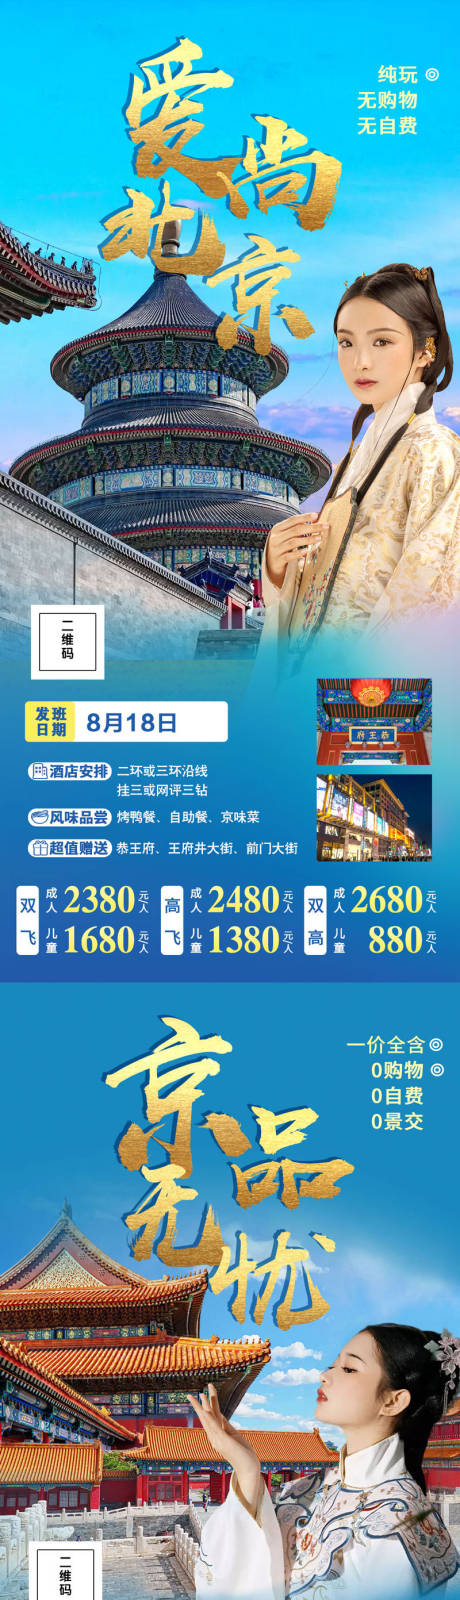 北京旅游海报系列